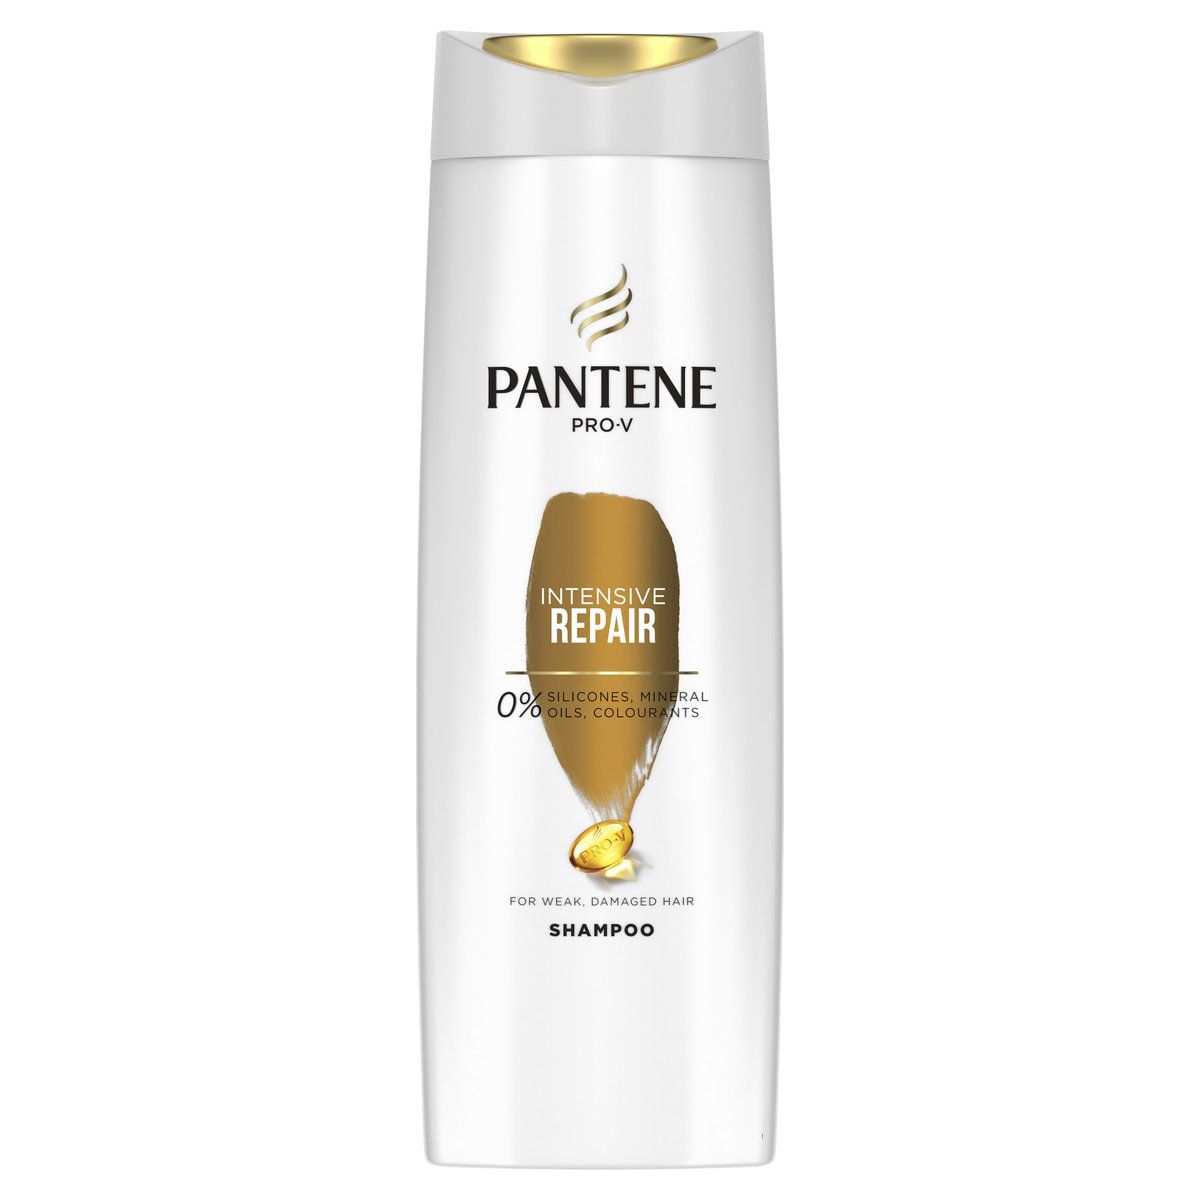 pantene pro-v 2w1 szampon przeciwłupieżowy z odżywką 400 ml